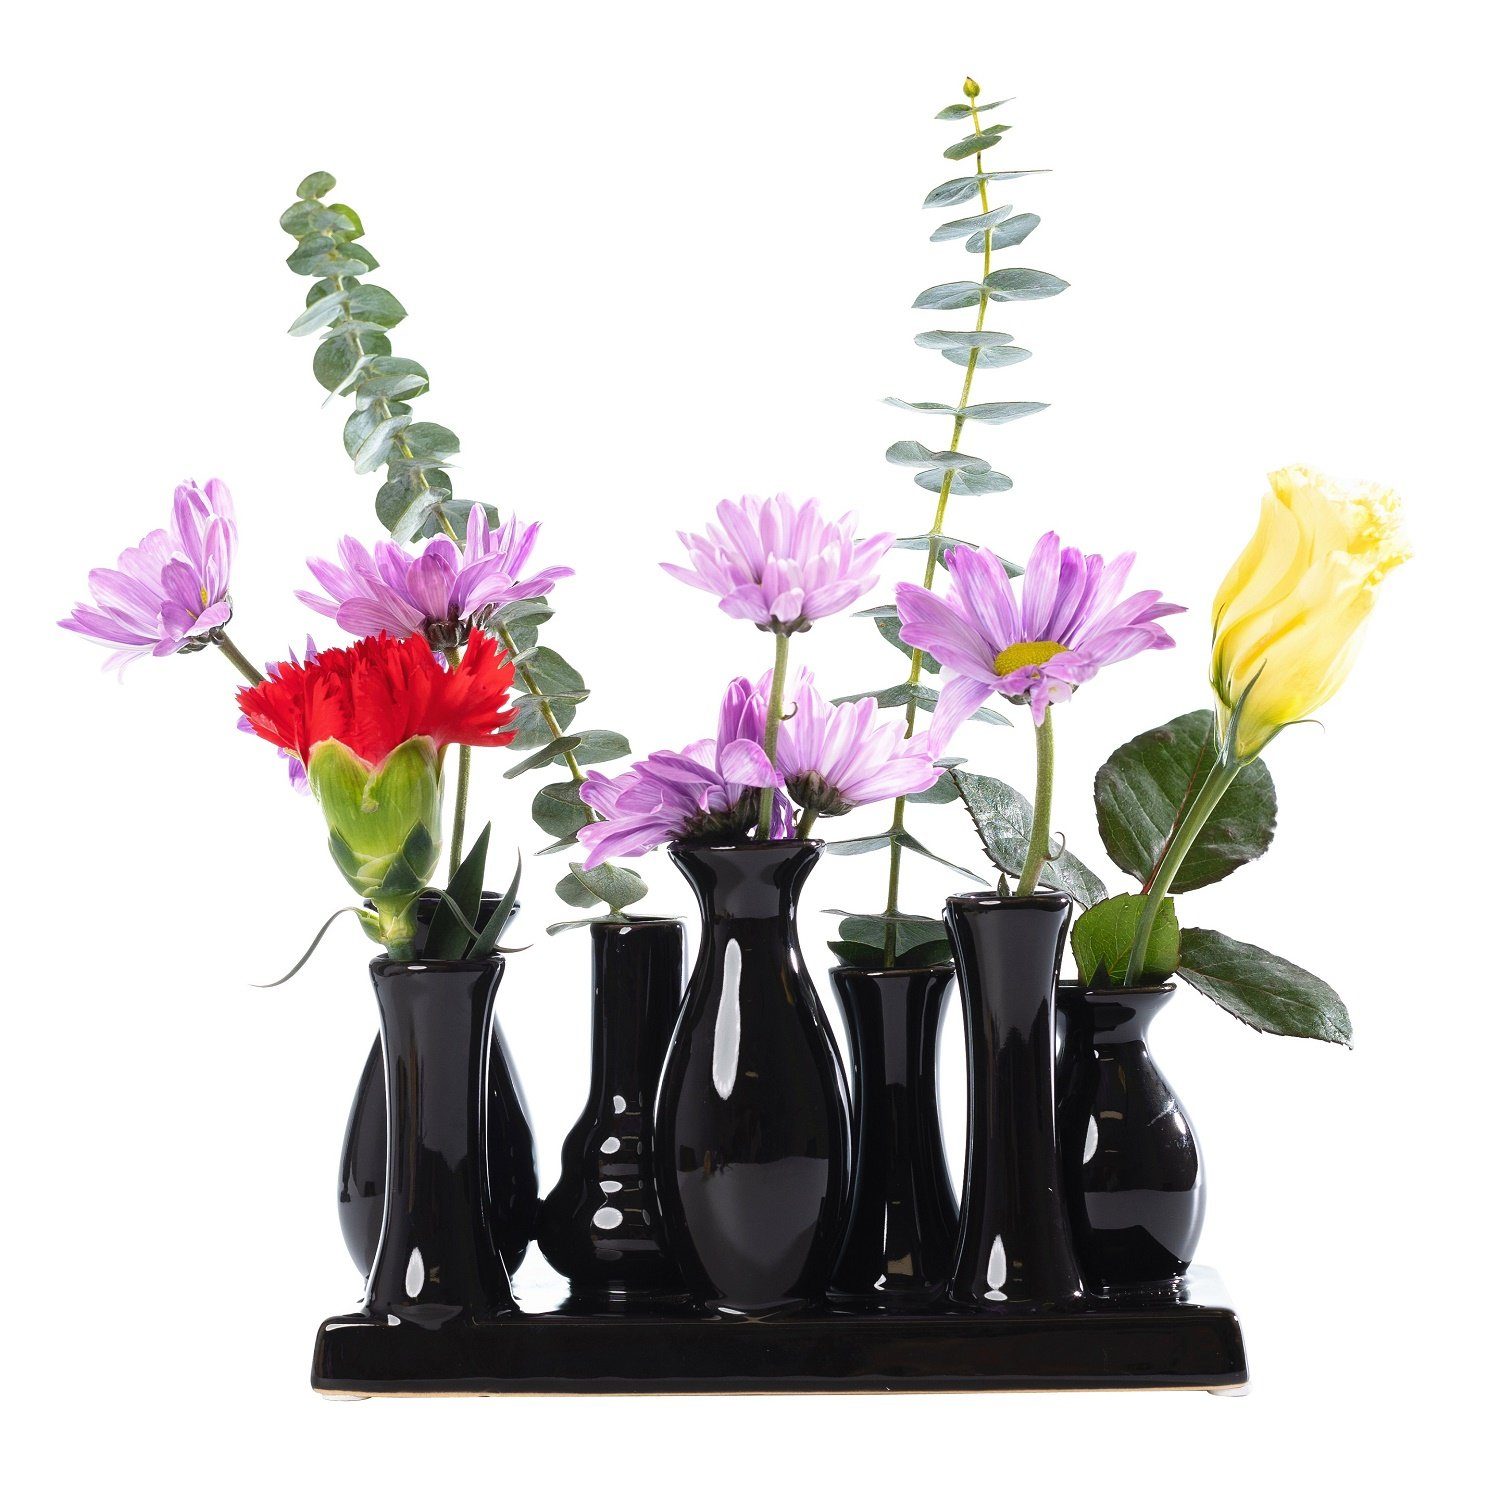 Jinfa Dekovase Handgefertigte kleine Keramik Deko Вази для квітів (7 Vasen Set schwarz), verbunden auf auf einem Tablett